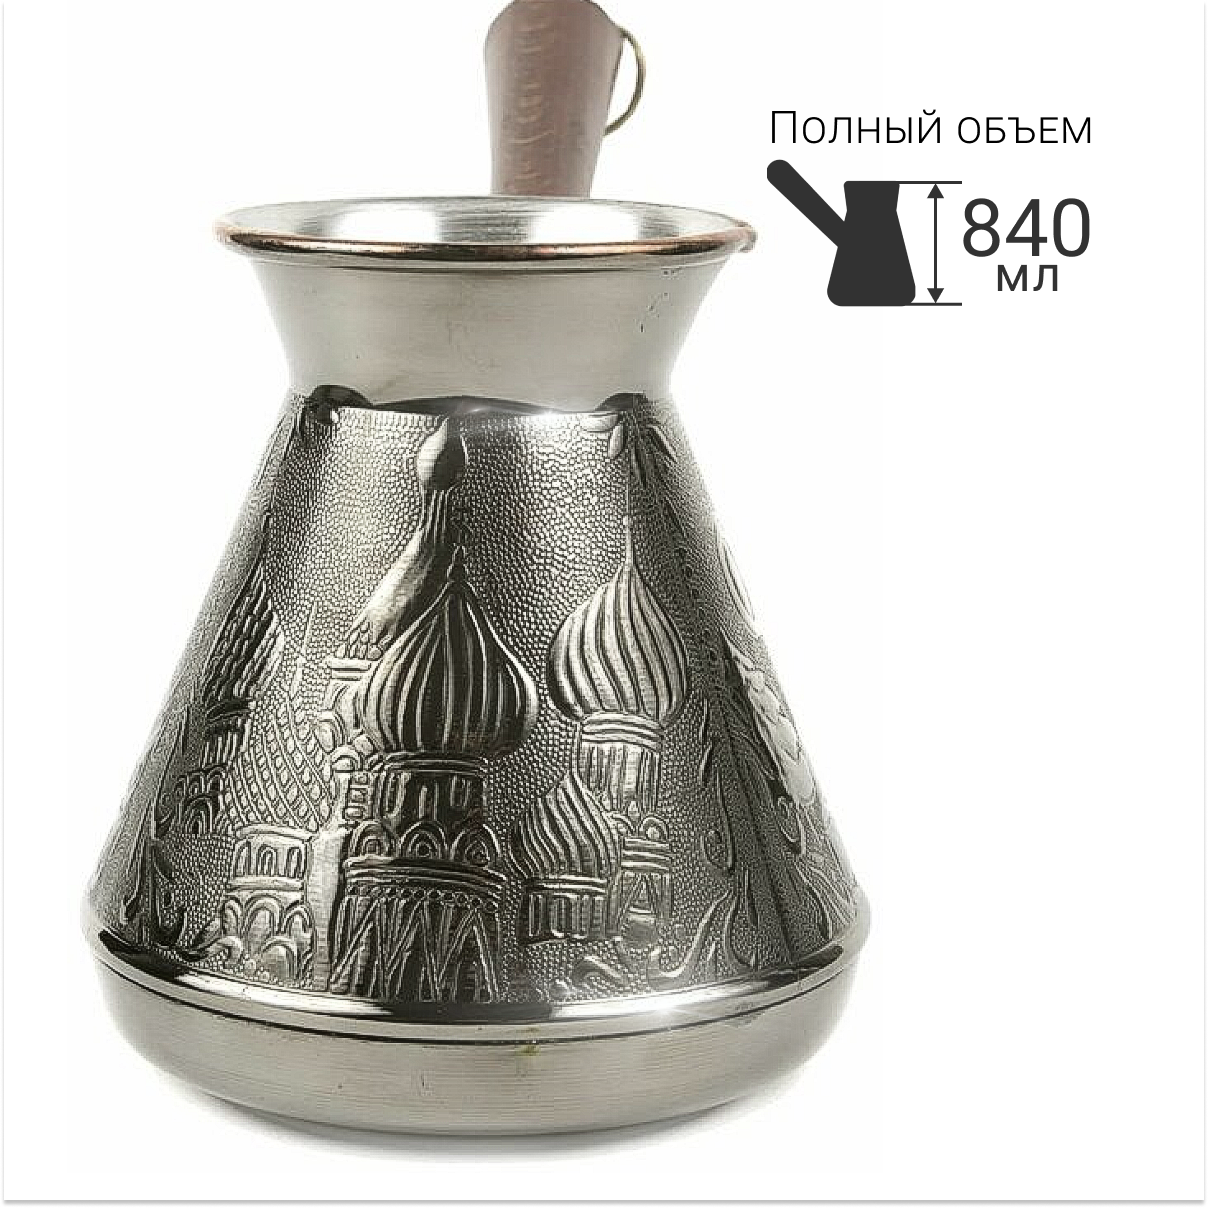 Турка медная, турка для кофе большая "Москва", 840 мл.